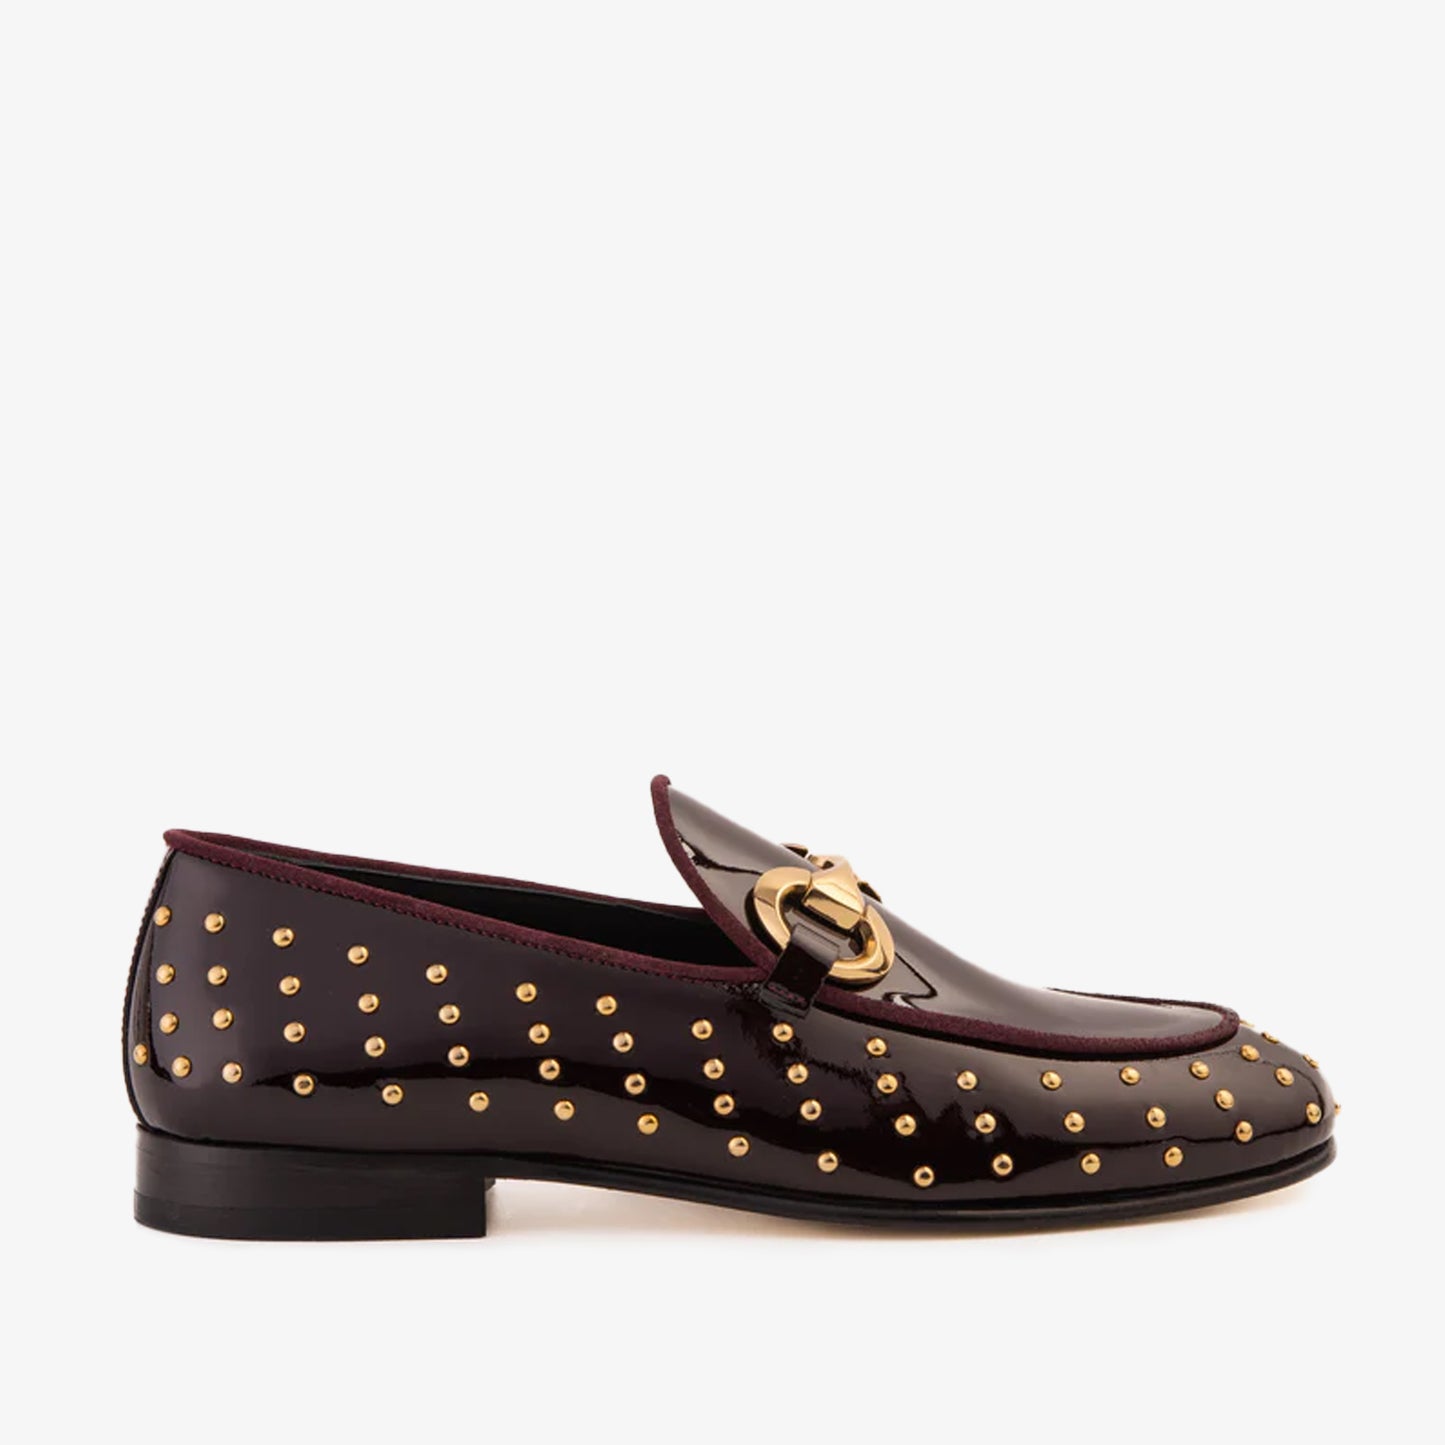 The Jupiter  Shoe Burgundy Spike Leather  Bit Dress Loafer Limited Edition Men Shoe